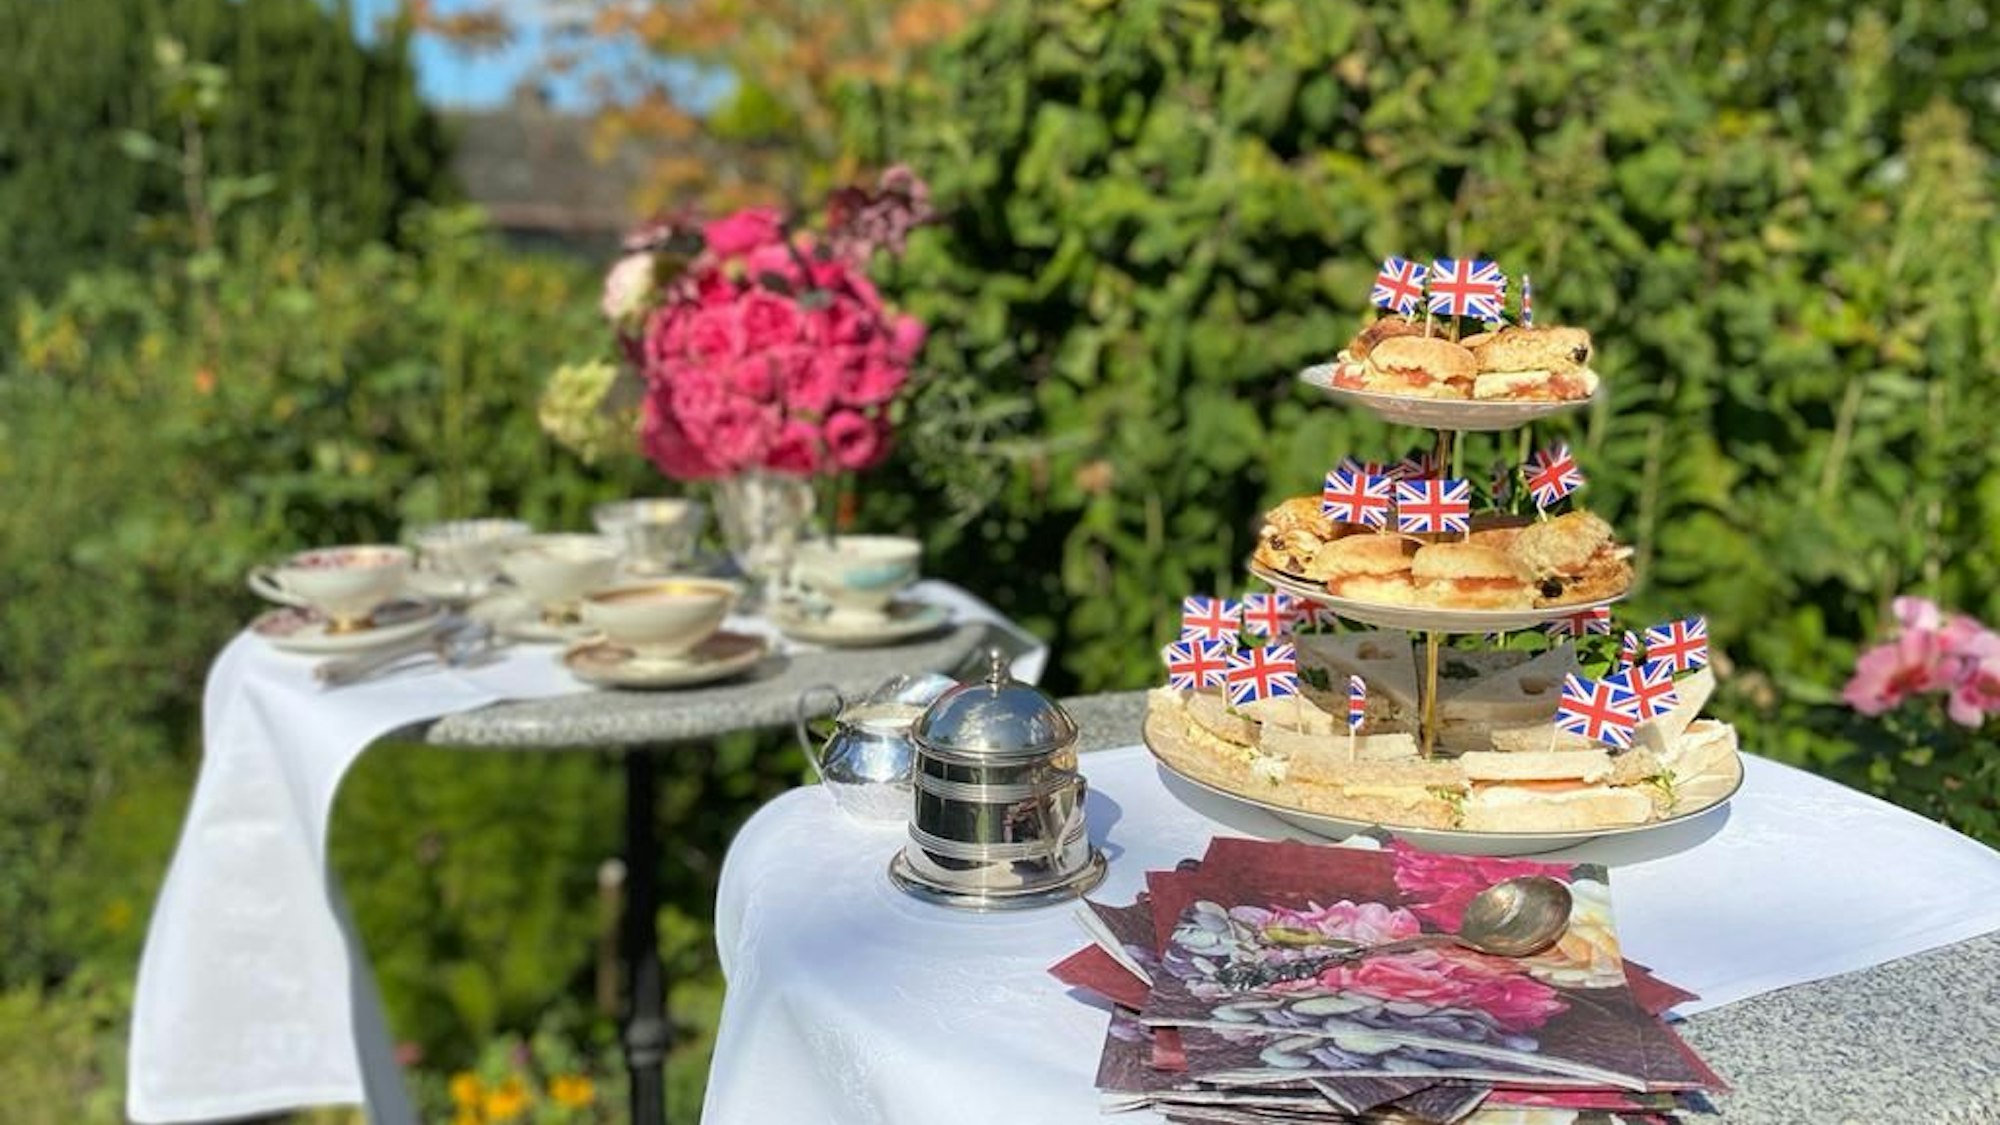 Auf zwei Tischen im Garten stehen auf weißen Tischdecken Teetassen, Blumen sowie Sandwiches und Scones, dekoriert mit der britischen Flagge.